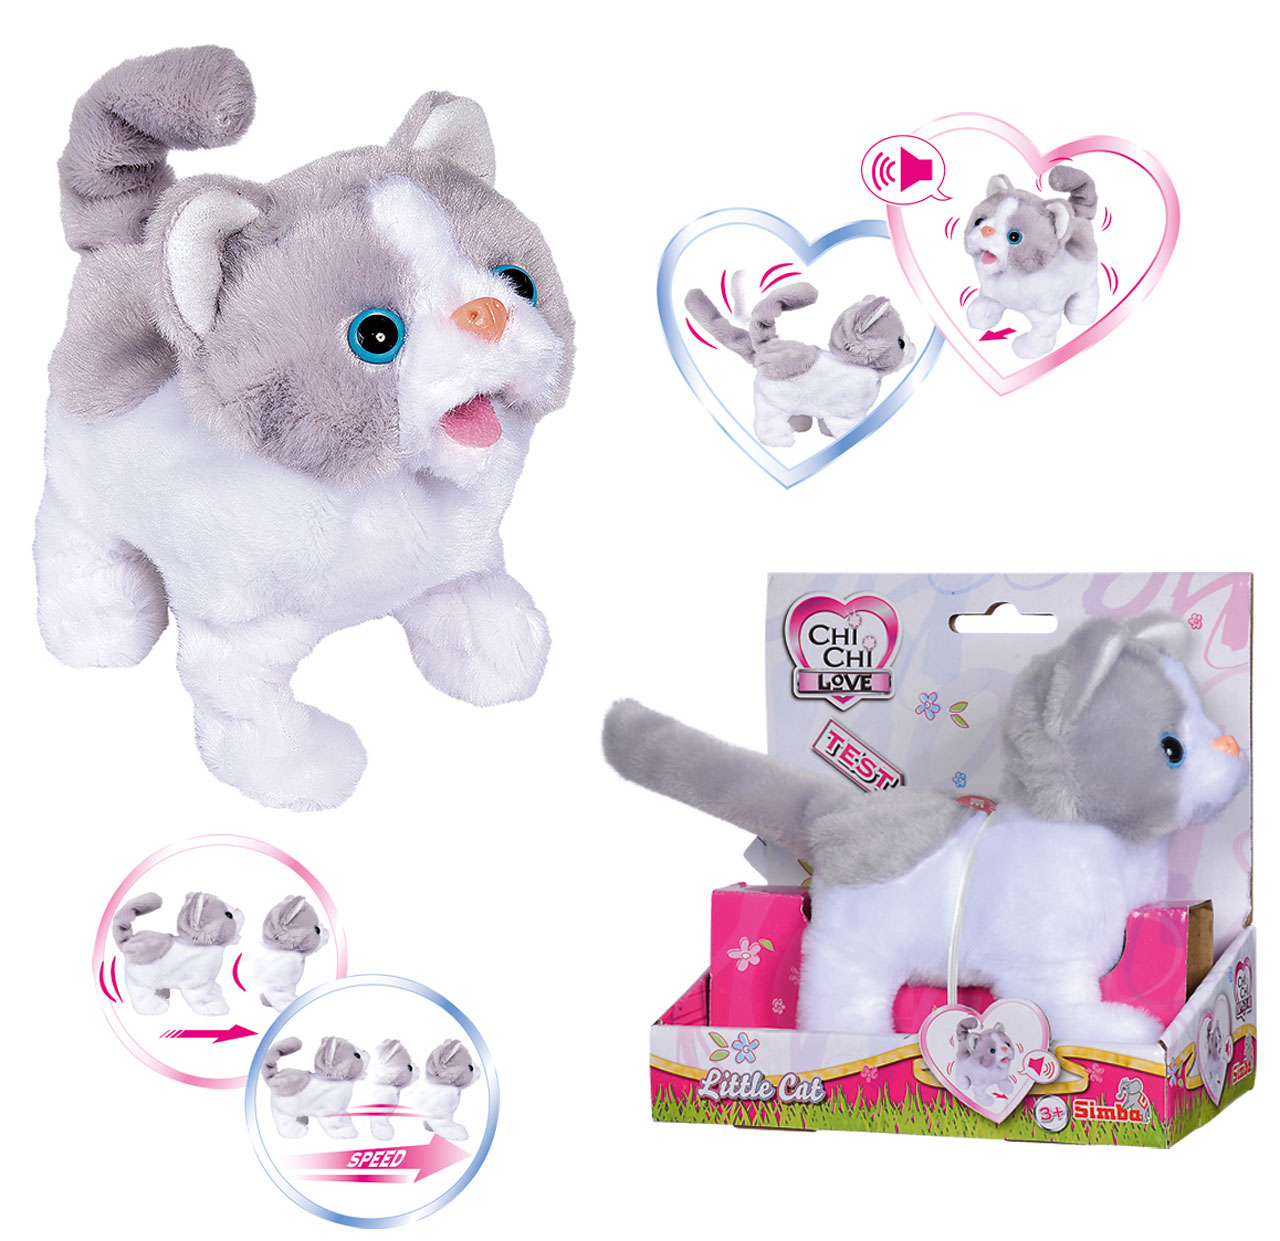 (Weiß-Grau) SIMBA® Spielzeug24 Funktionen Süße Little mit Katze Chi Chi Cat | Love ✔️